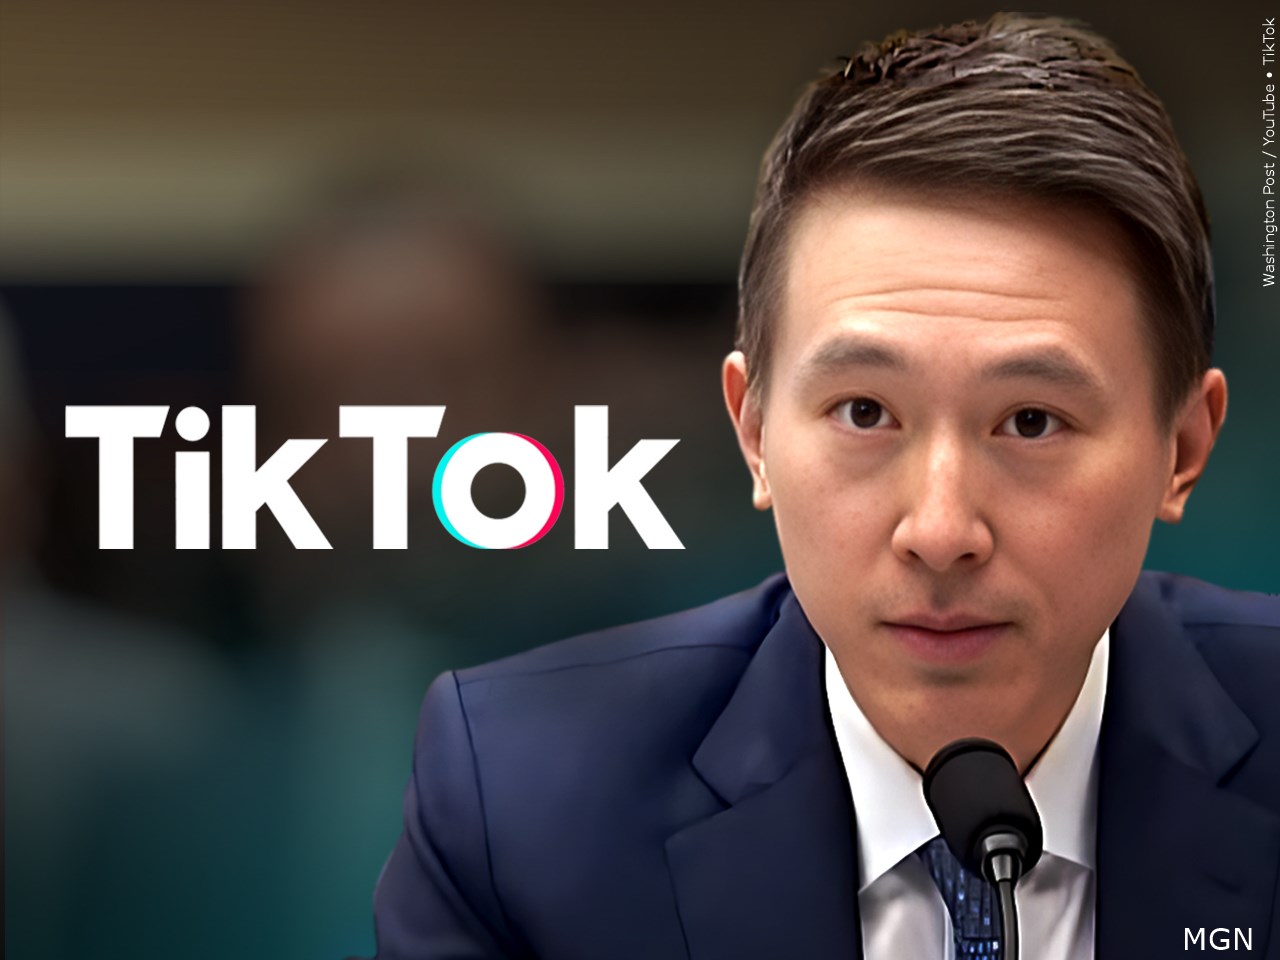 TikTok CEO - Shou Chew